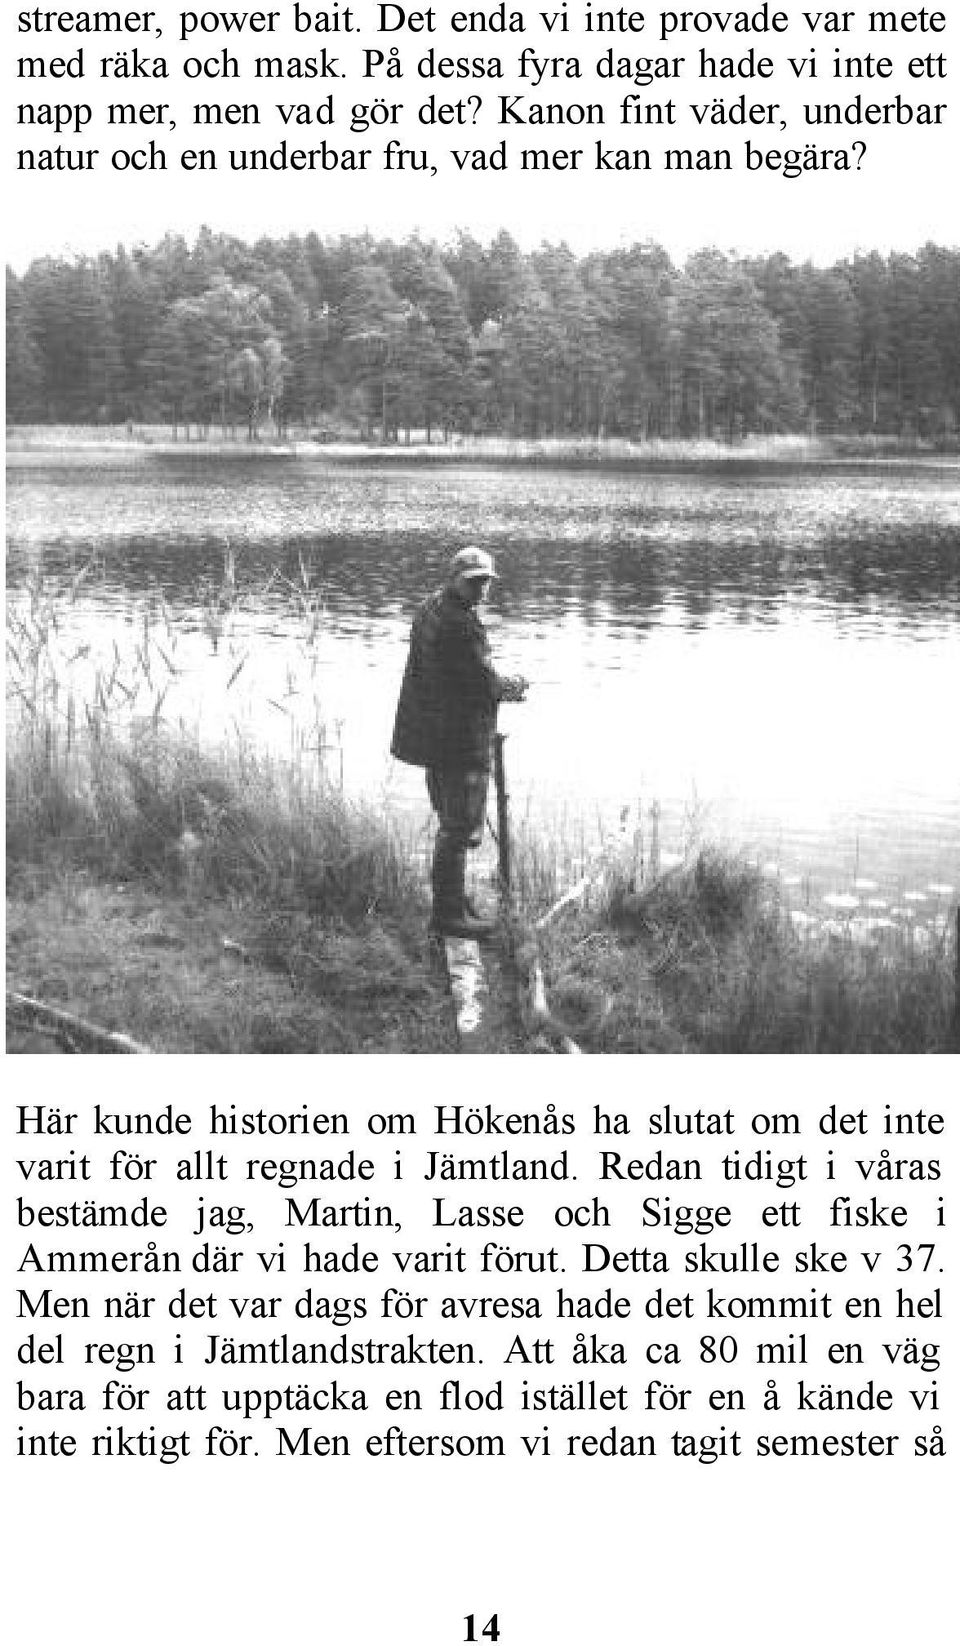 Redan tidigt i våras bestämde jag, Martin, Lasse och Sigge ett fiske i Ammerån där vi hade varit förut. Detta skulle ske v 37.